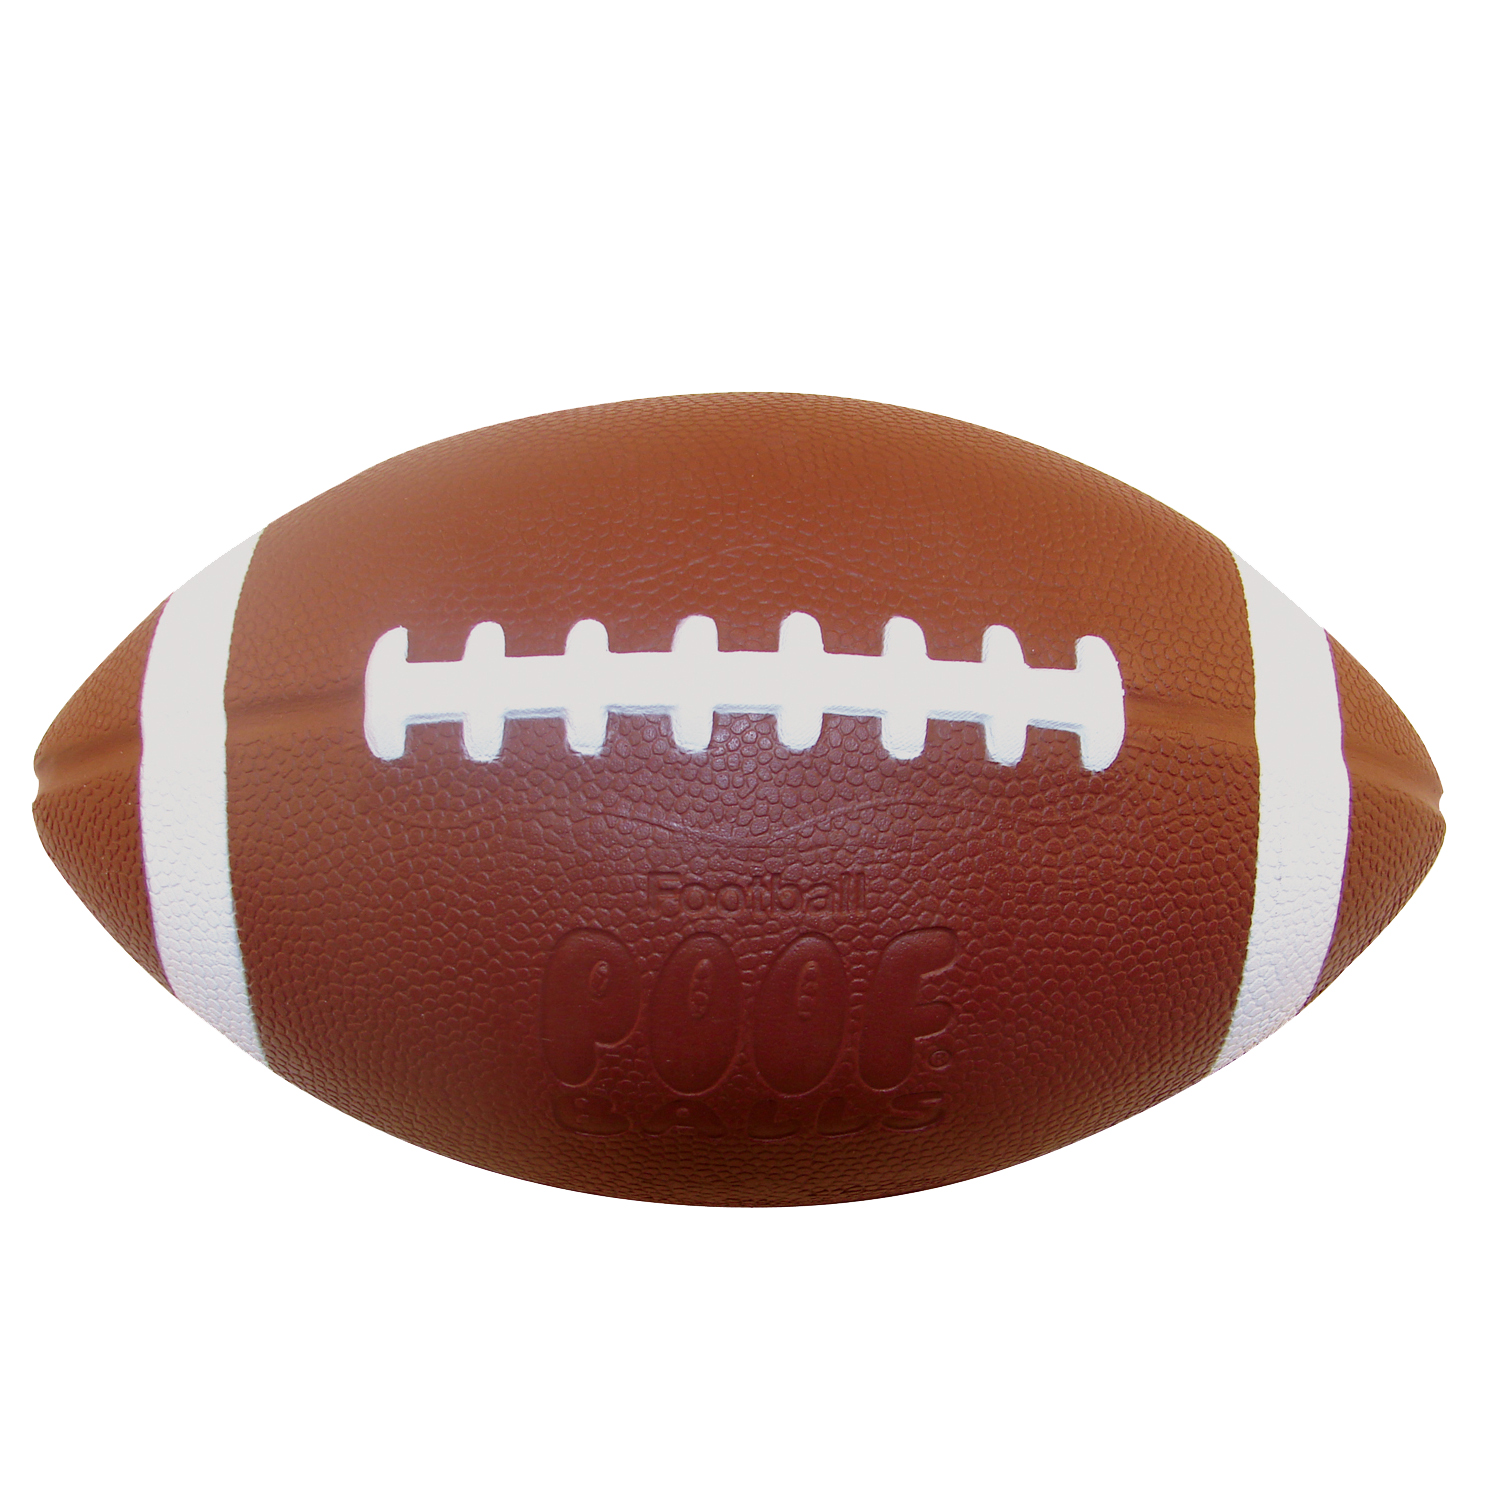 Pro Gold™ Football| Foam Kids Sports Toys by POOF-Slinky®